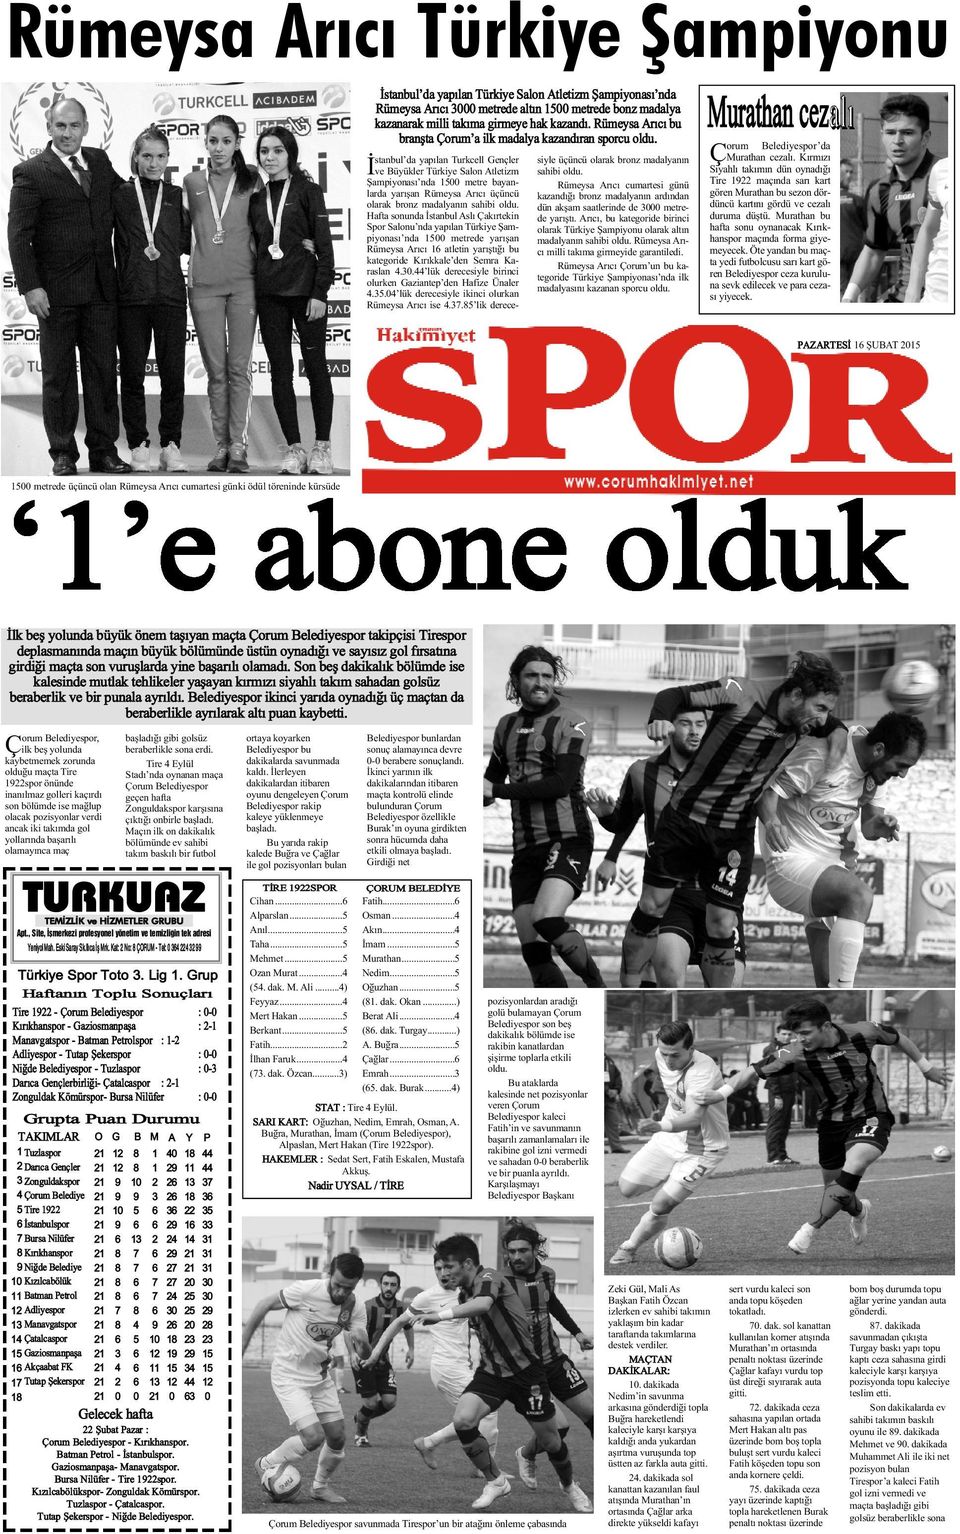 Ý stanbul da yapýlan Turkcell Gençler ve Büyükler Türkiye Salon Atletizm Þampiyonasý nda 1500 metre bayanlarda yarýþan Rümeysa Arýcý üçüncü olarak bronz madalyanýn sahibi oldu.